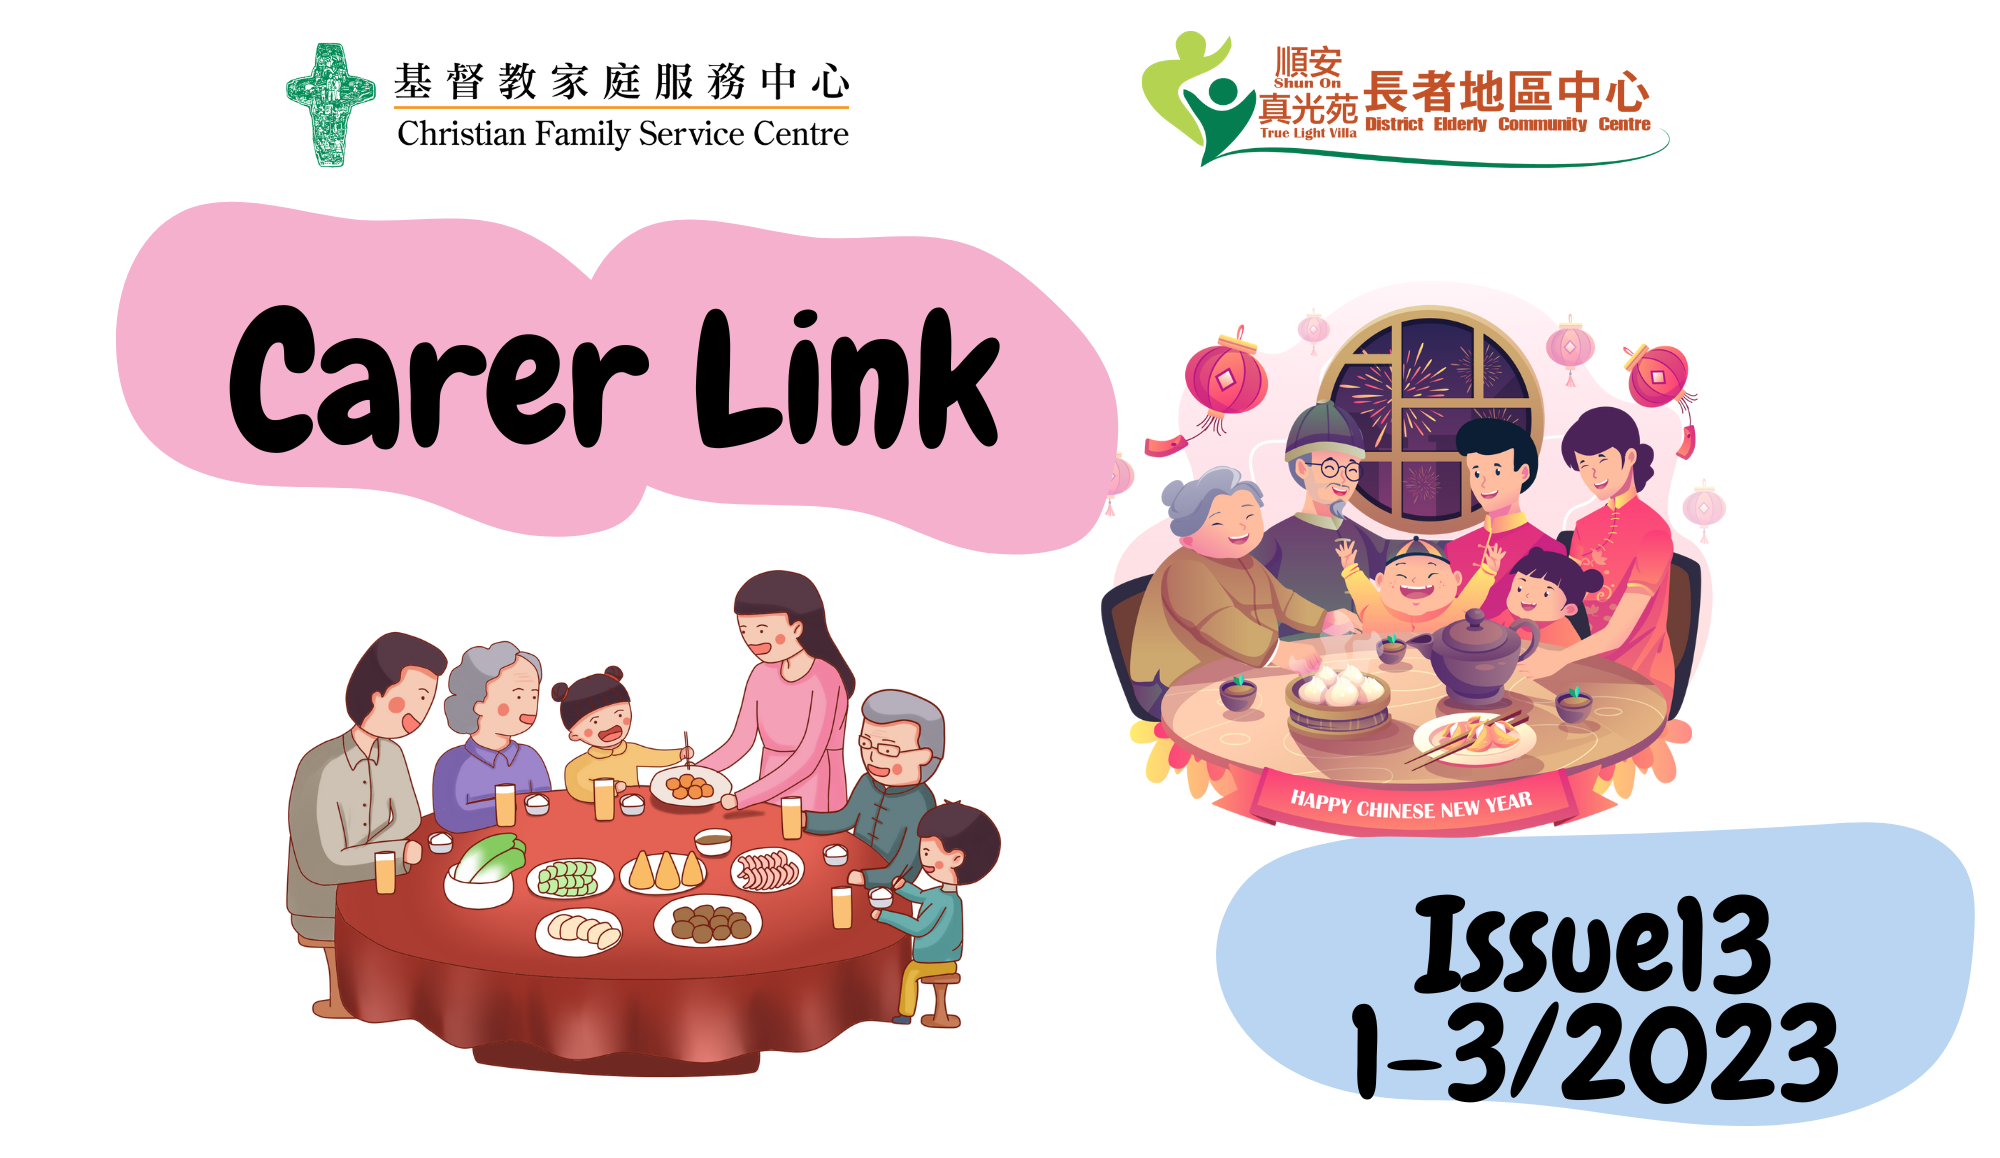 最新一期 Carer Link 照护同行通讯 现已出版